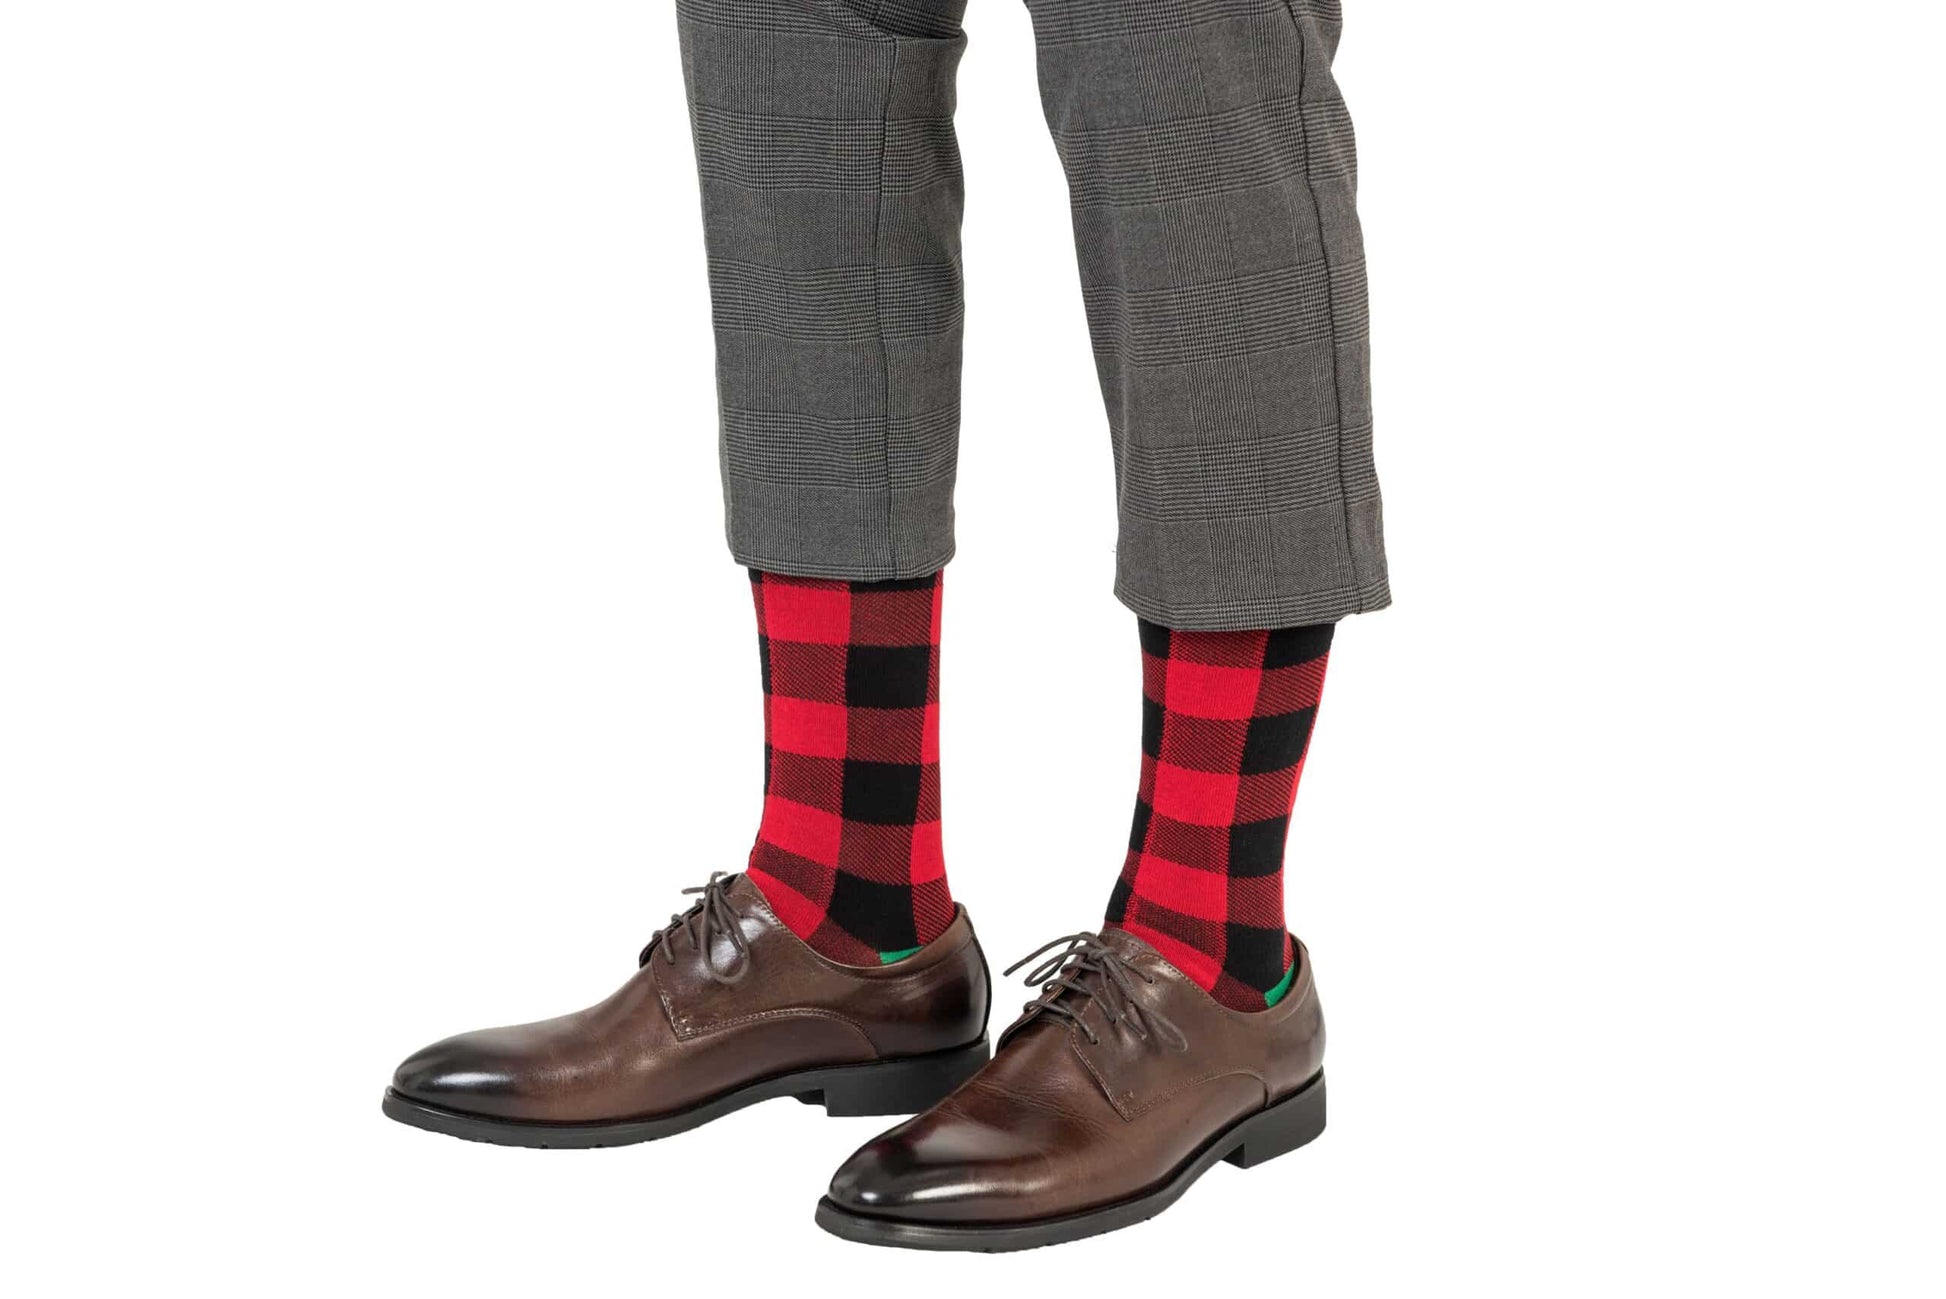 A man wearing Cross Hatch Stripes socks.